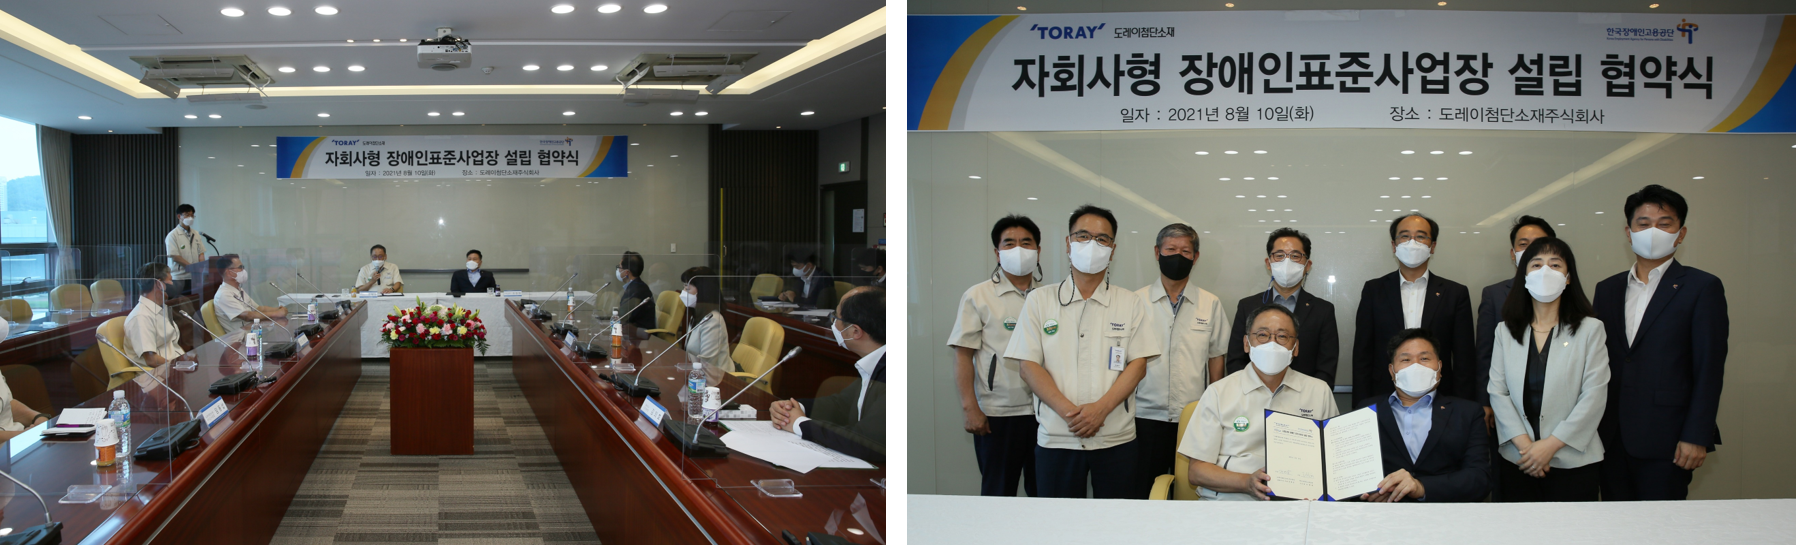 도레이첨단소재, 한국장애인고용공단과 ‘자회사형 장애인 표준사업장’ 설립 협약 체결